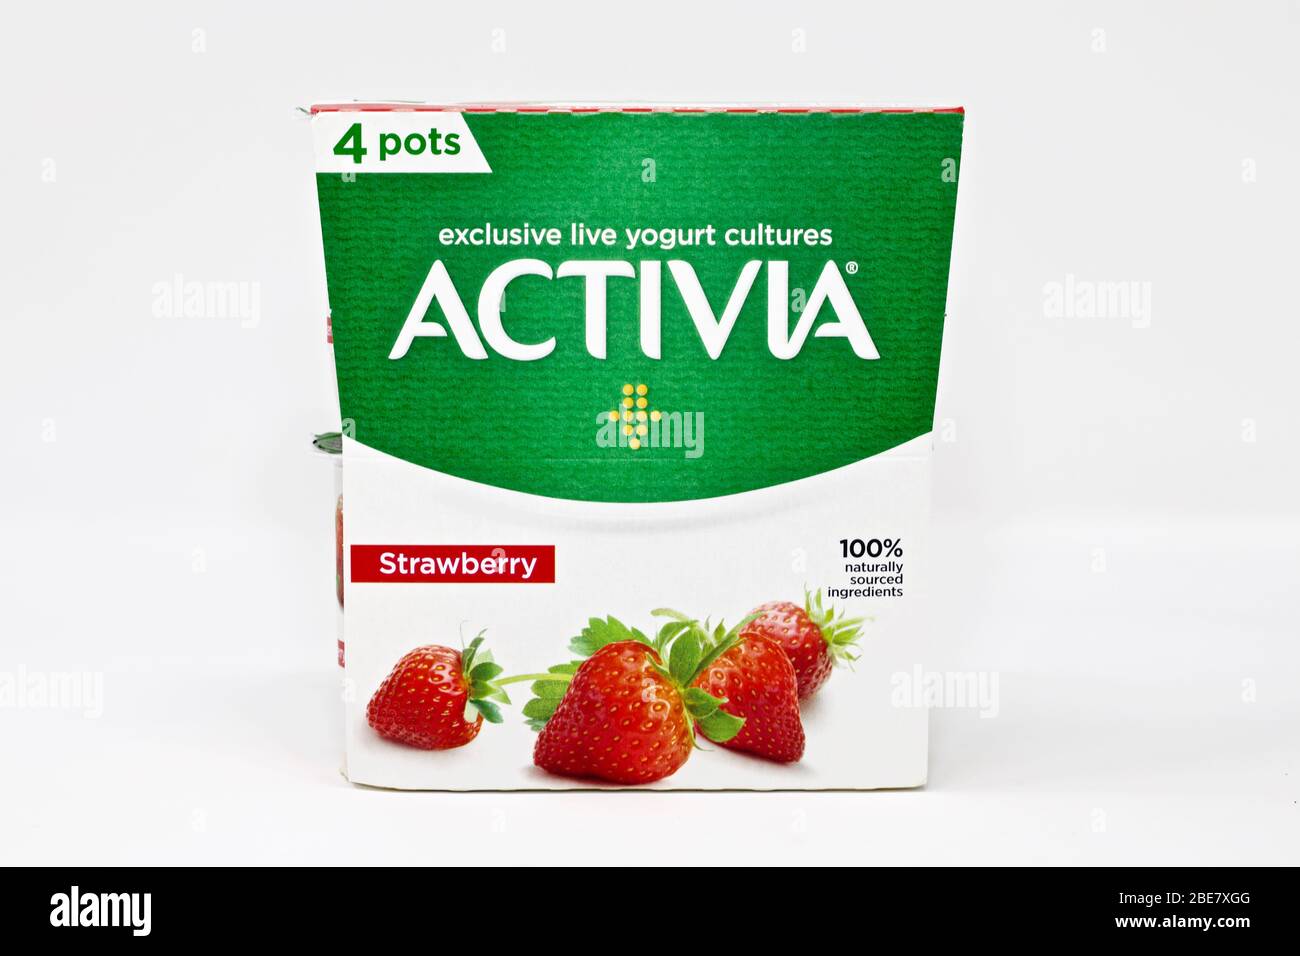 Danone Activia Strawberry Yogurt Stock Photo - Alamy